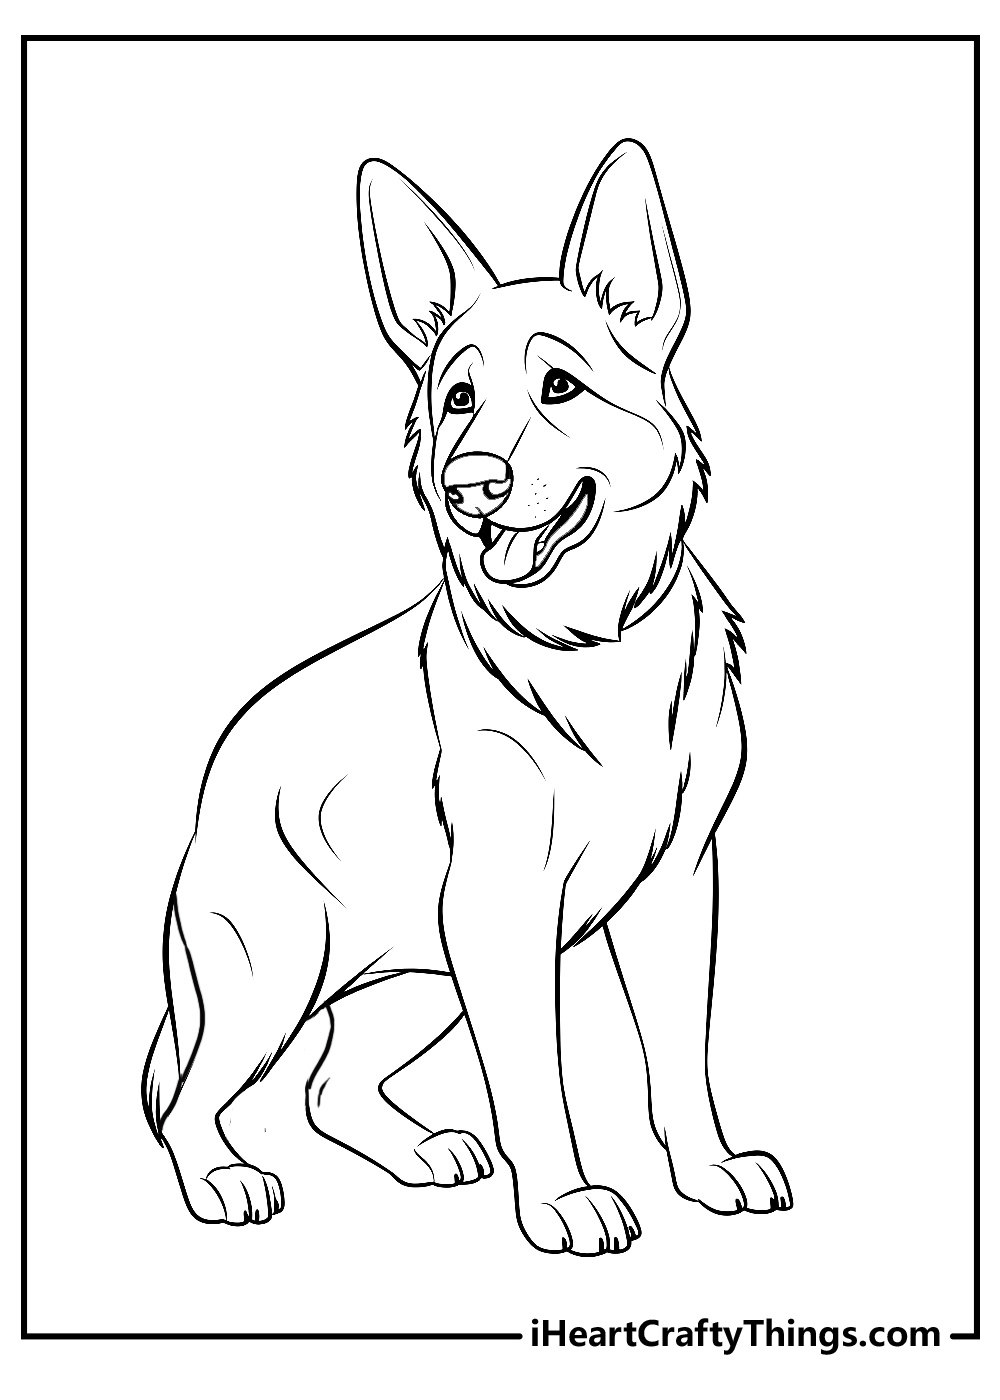 German Shepherd coloring pdf sheet